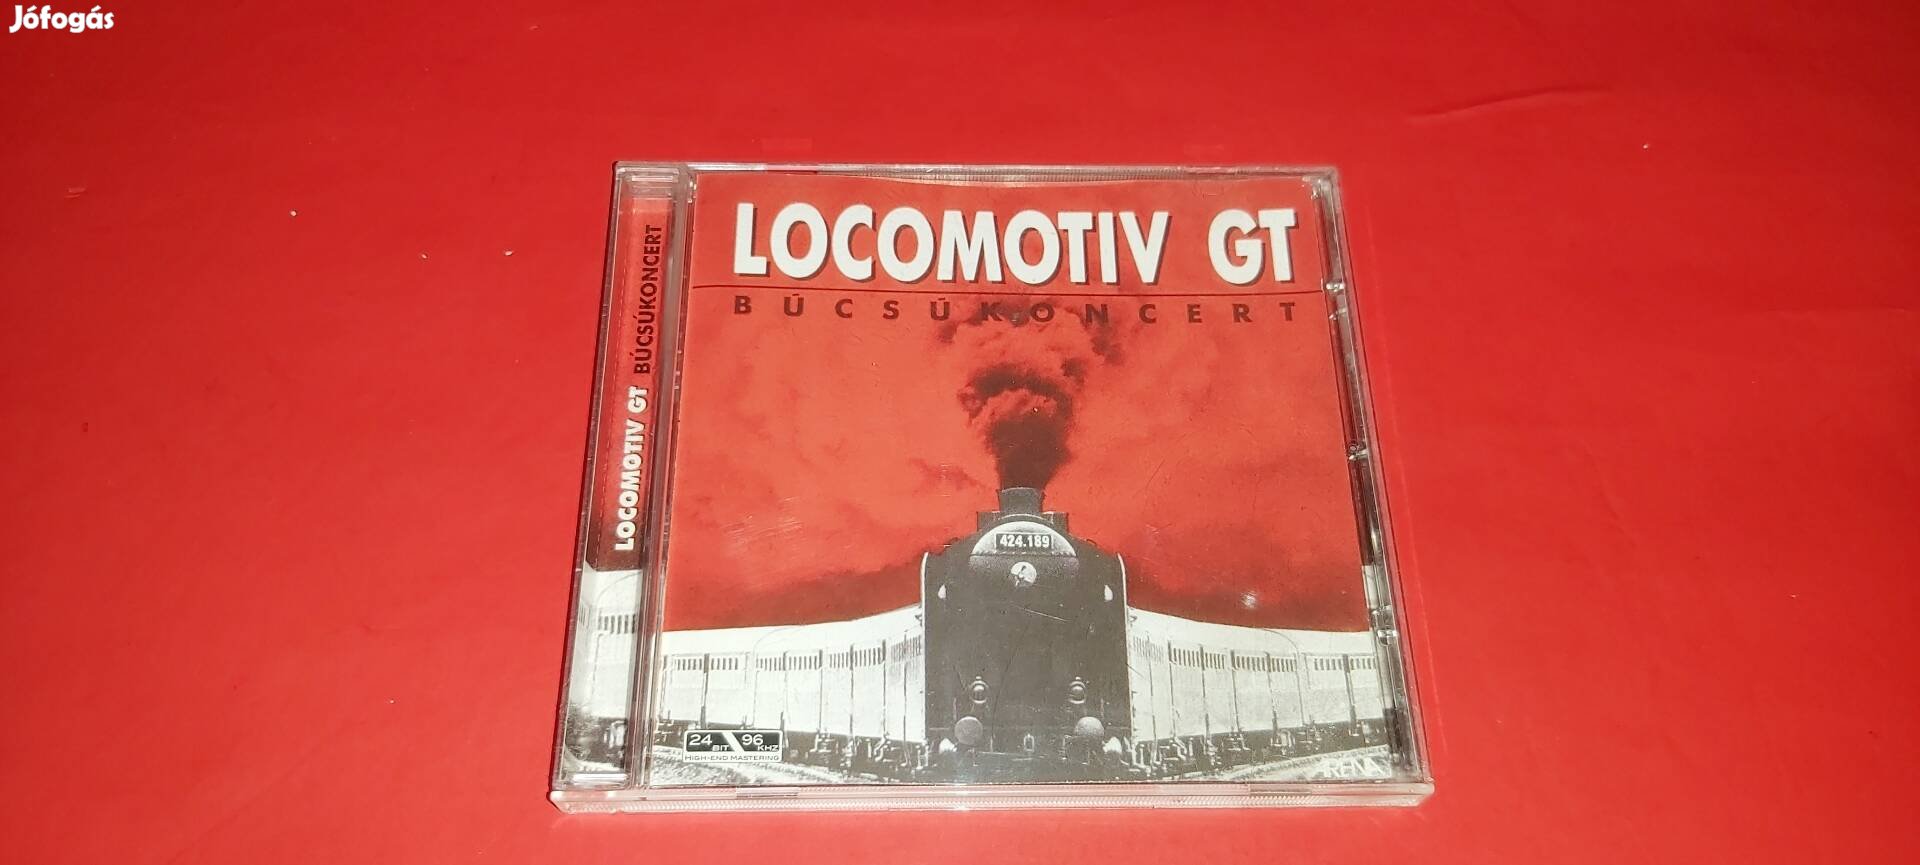 Lokomotív GT Búcsúkoncert Cd ( Red disc) 2006